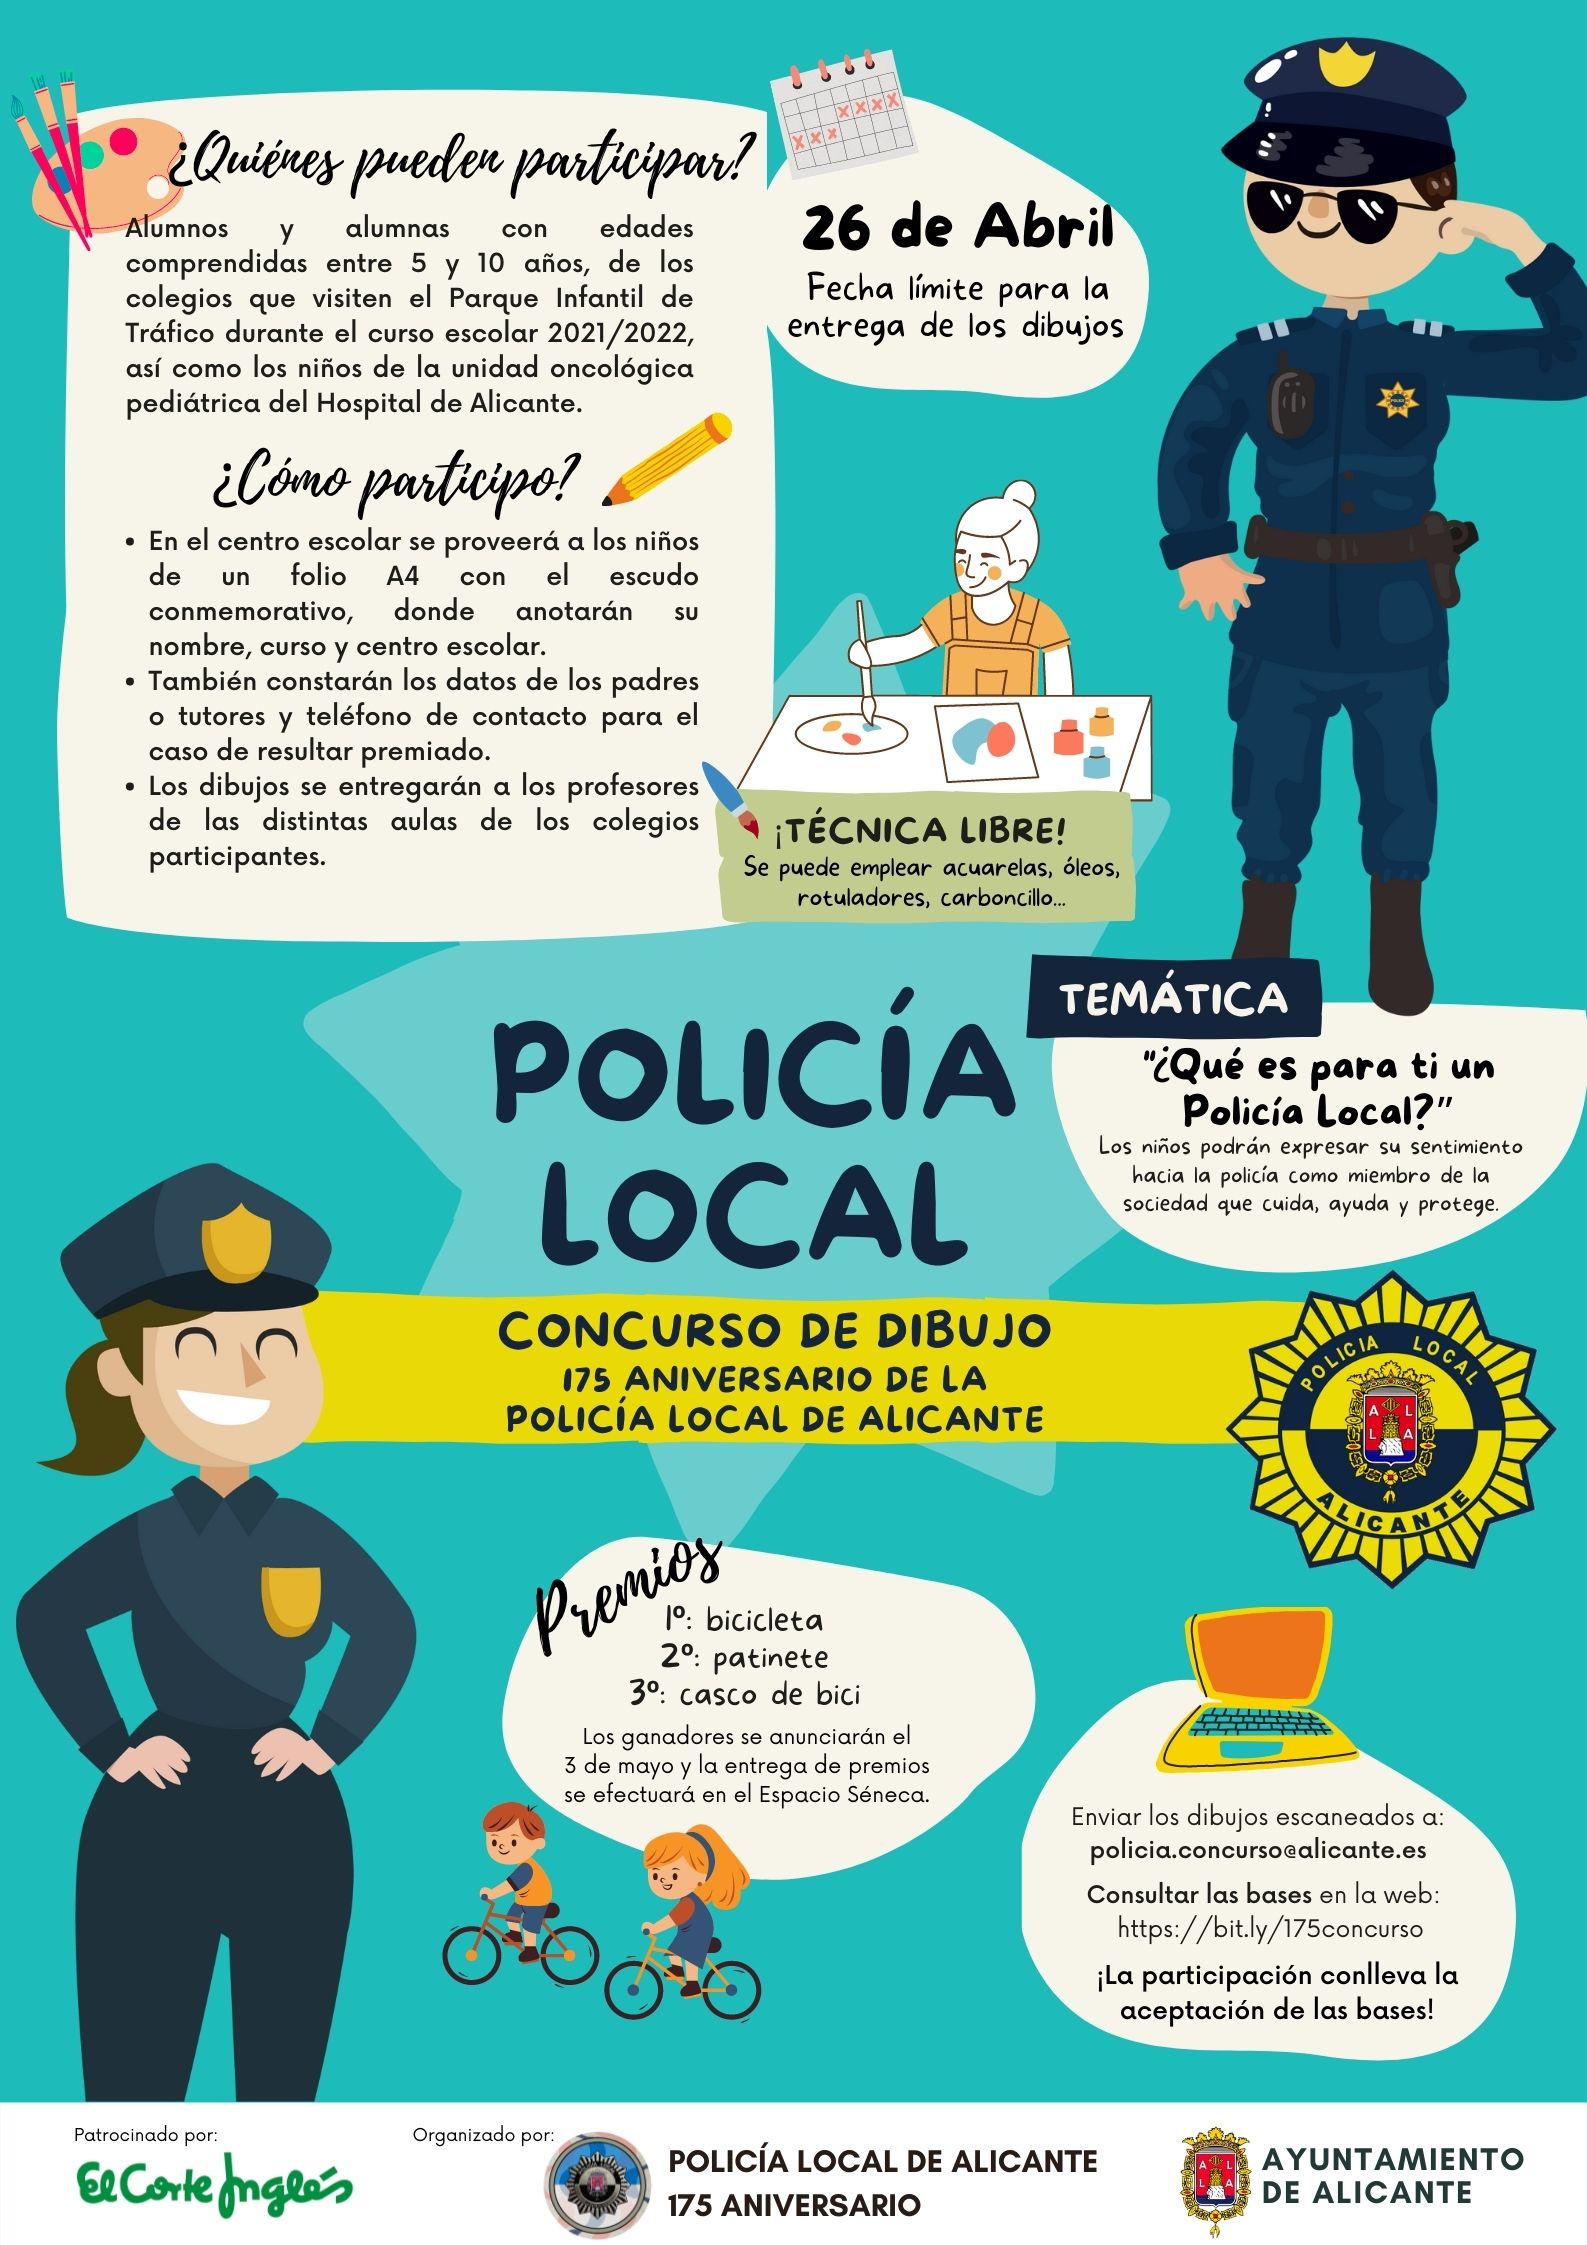 La Policía Local convoca un concurso de dibujo con motivo de su 175  aniversario | Ayuntamiento de Alicante